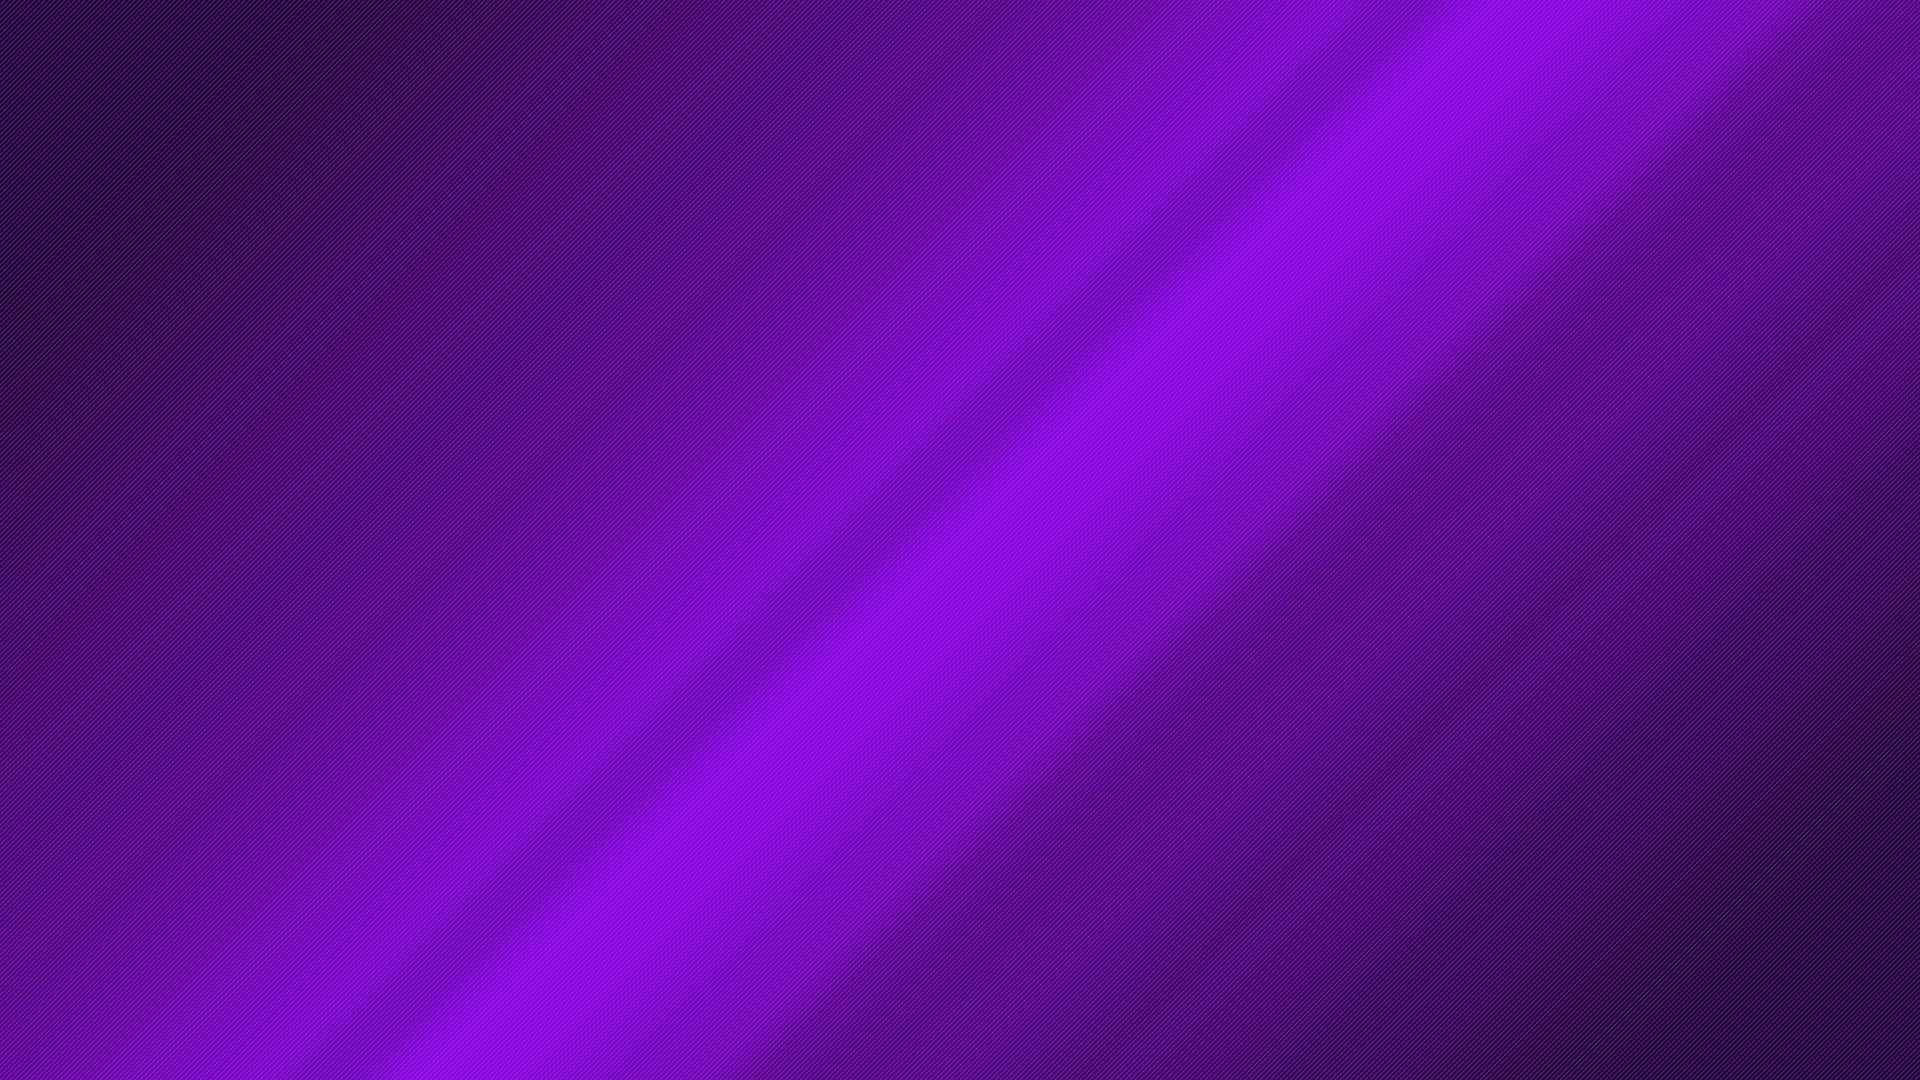 100+] Dark Purple Wallpapers | Wallpapers.com